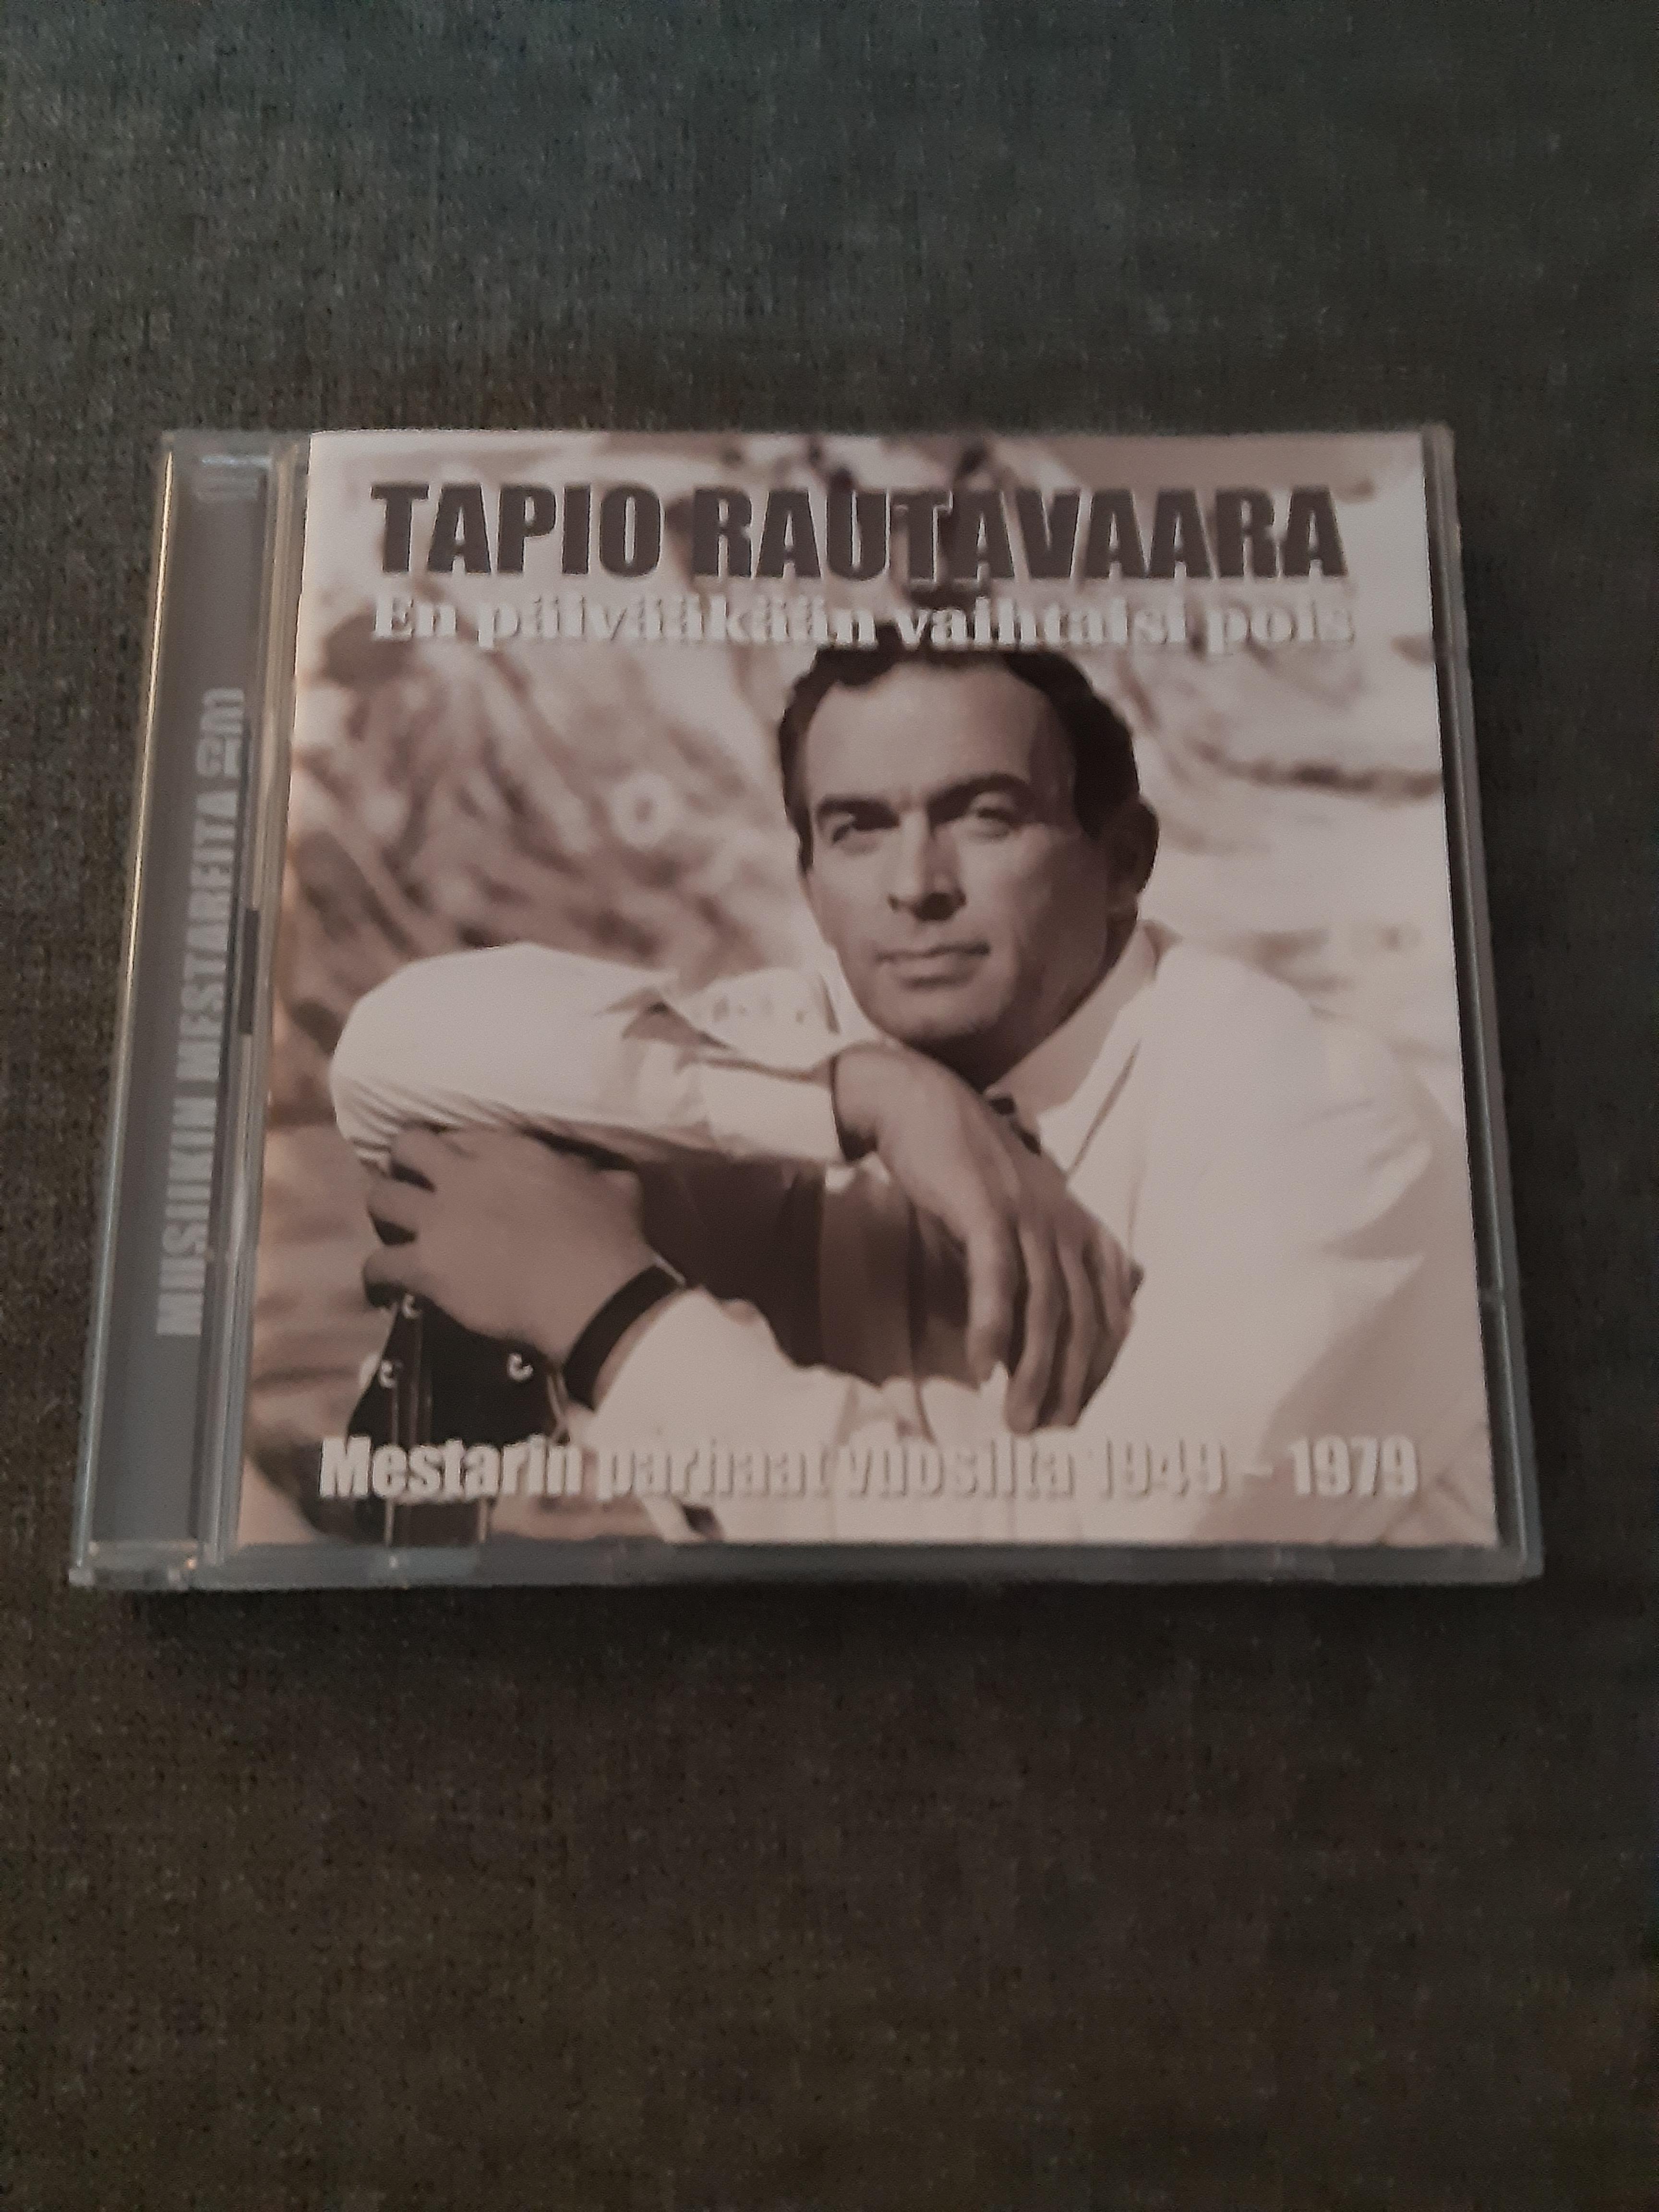 Tapio Rautavaara - En päivääkään vaihtaisi pois - 2 CD (käytetty)